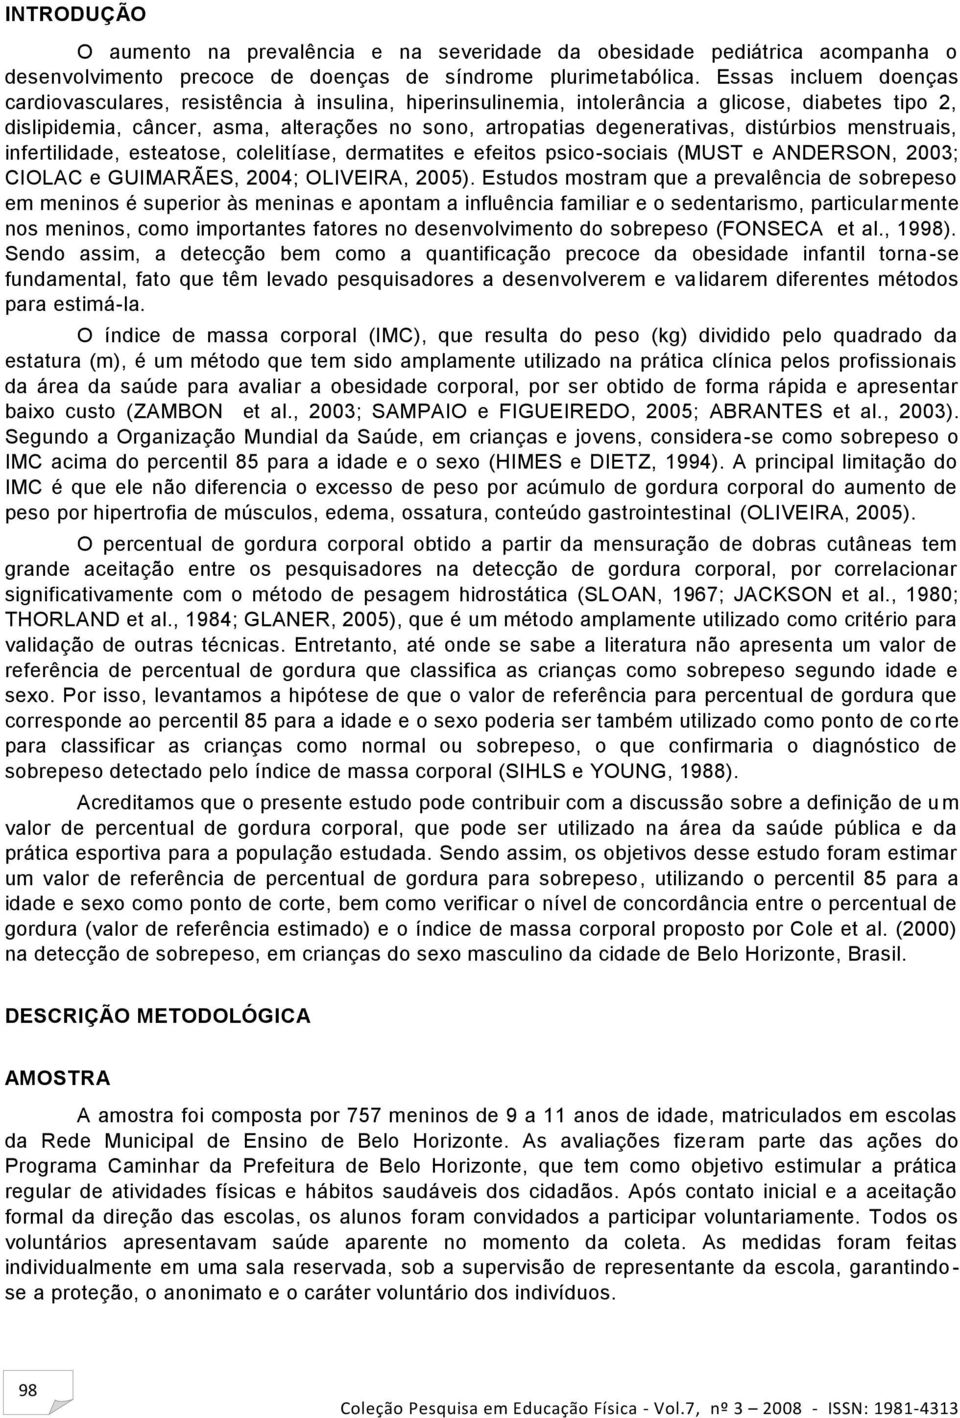 distúrbios menstruais, infertilidade, esteatose, colelitíase, dermatites e efeitos psico-sociais (MUST e ANDERSON, 2003; CIOLAC e GUIMARÃES, 2004; OLIVEIRA, 2005).